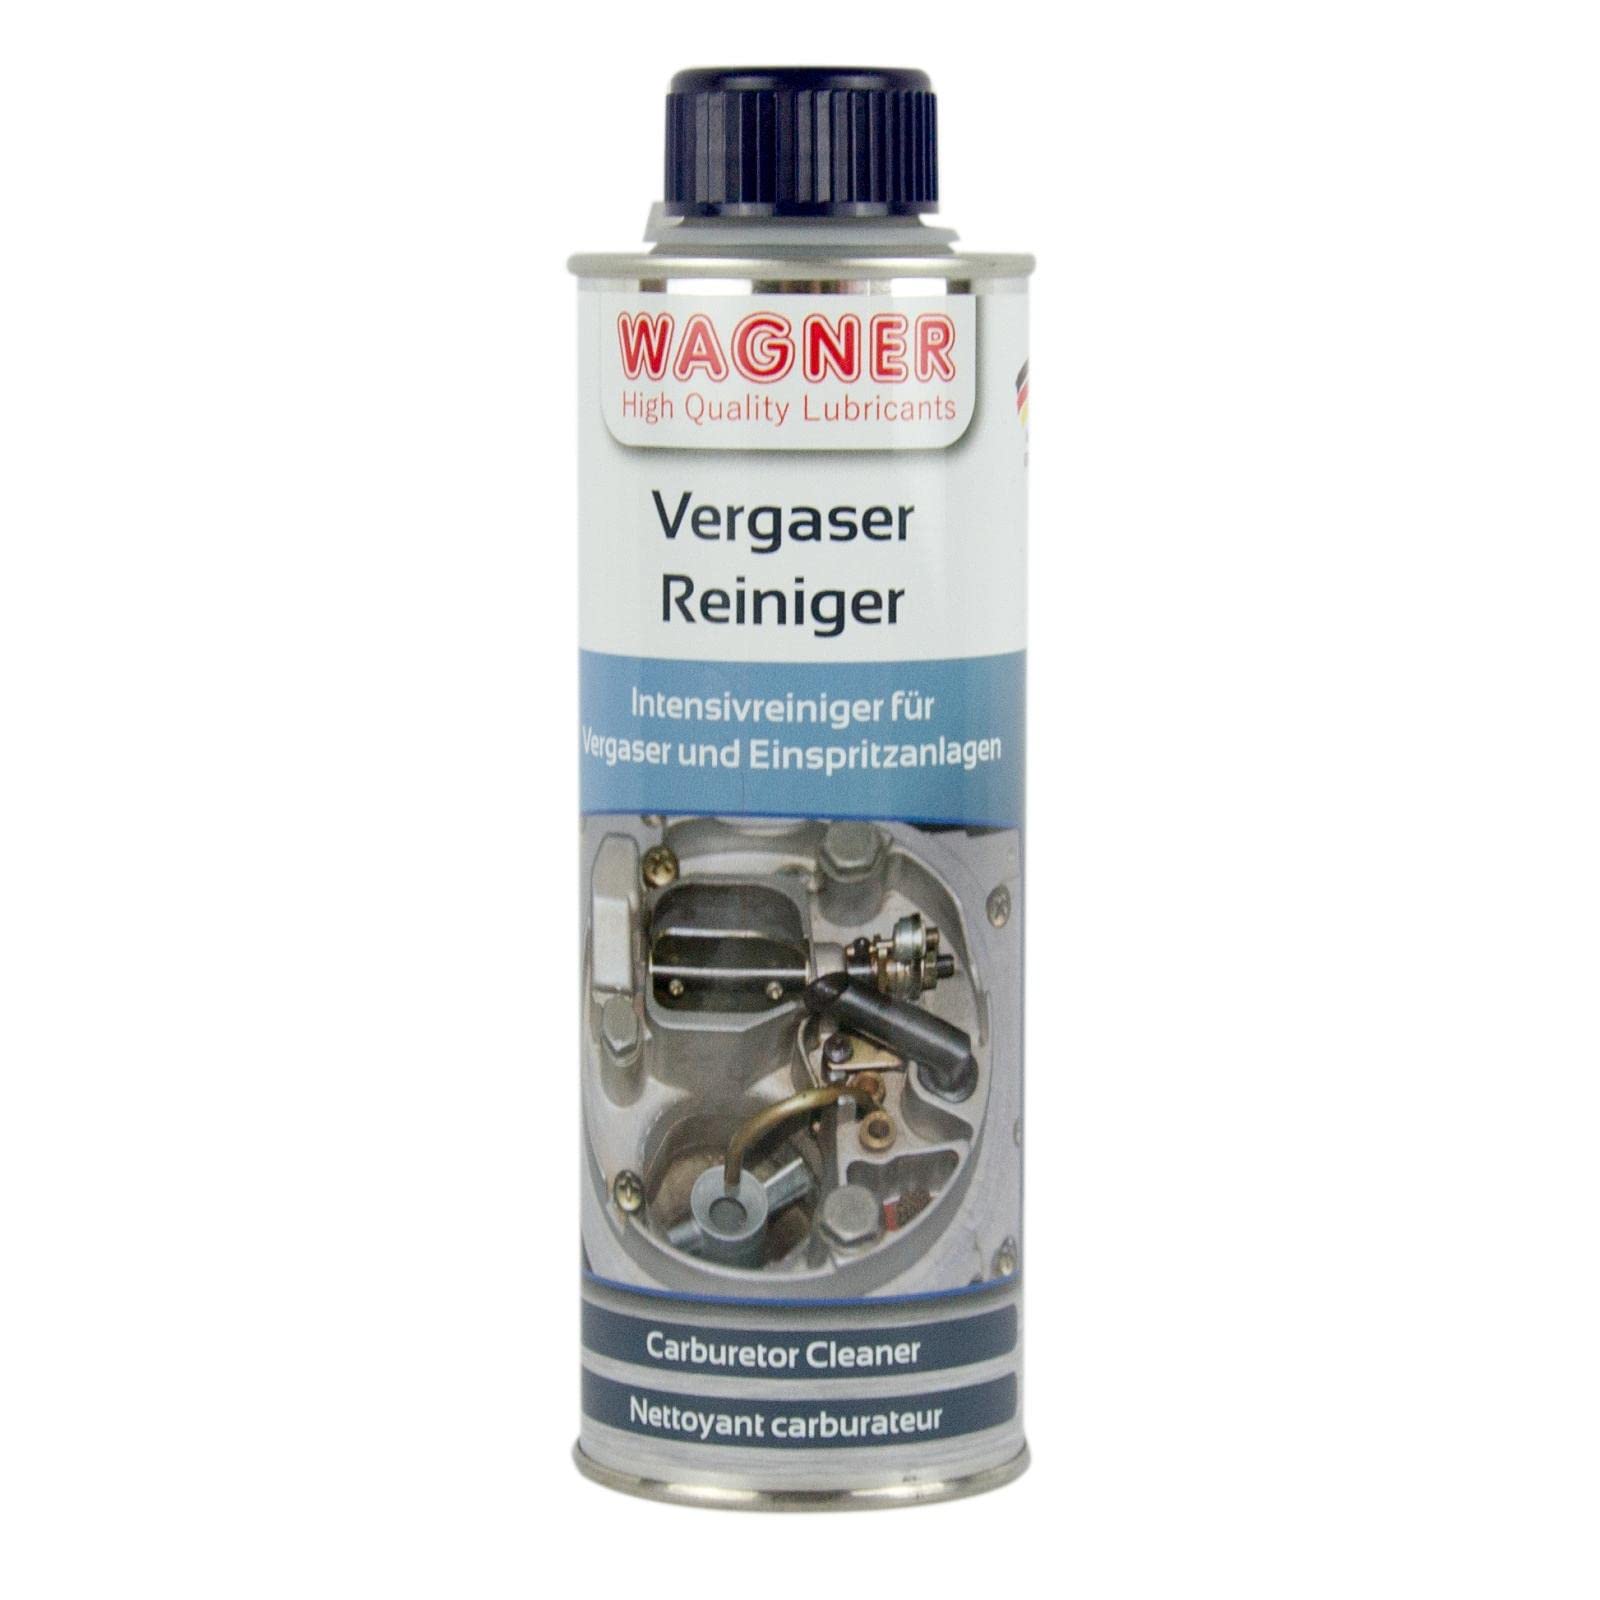 Wagner Vergaser-Reiniger Kraftstoffsystem-Reinigung für Benzin-Motoren - 048300-300 ml von WAGNER Spezialschmierstoffe GmbH & Co. KG